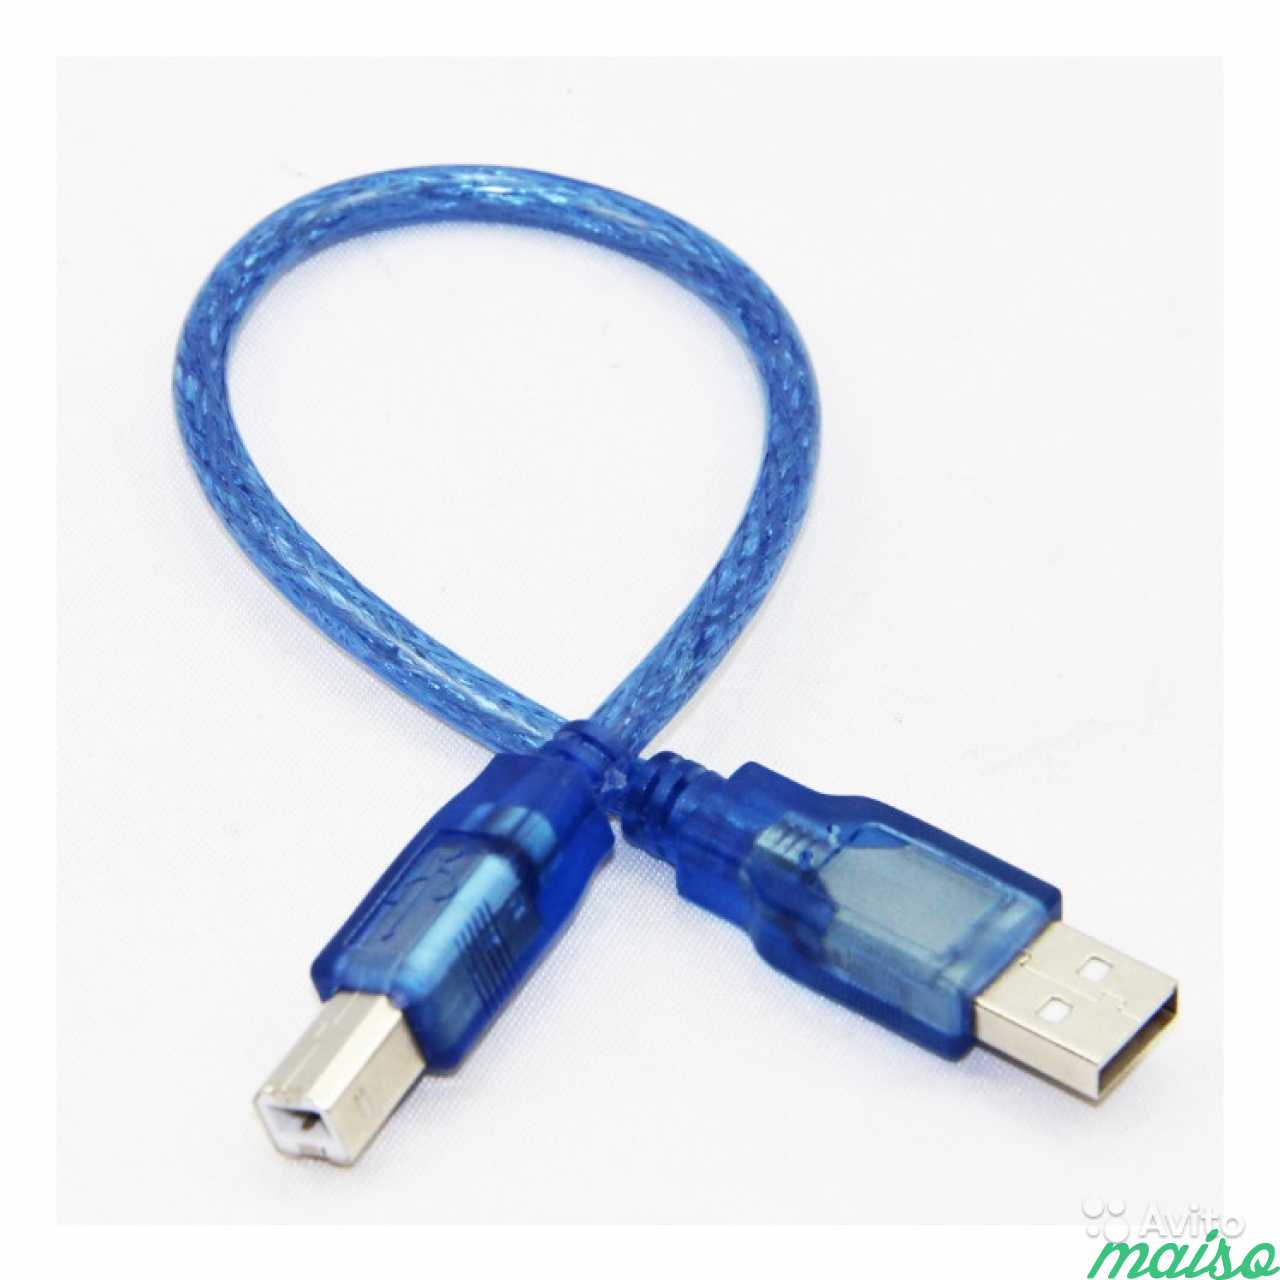 USB кабель для принтера. Арт. 0010.209 в Санкт-Петербурге. Фото 1